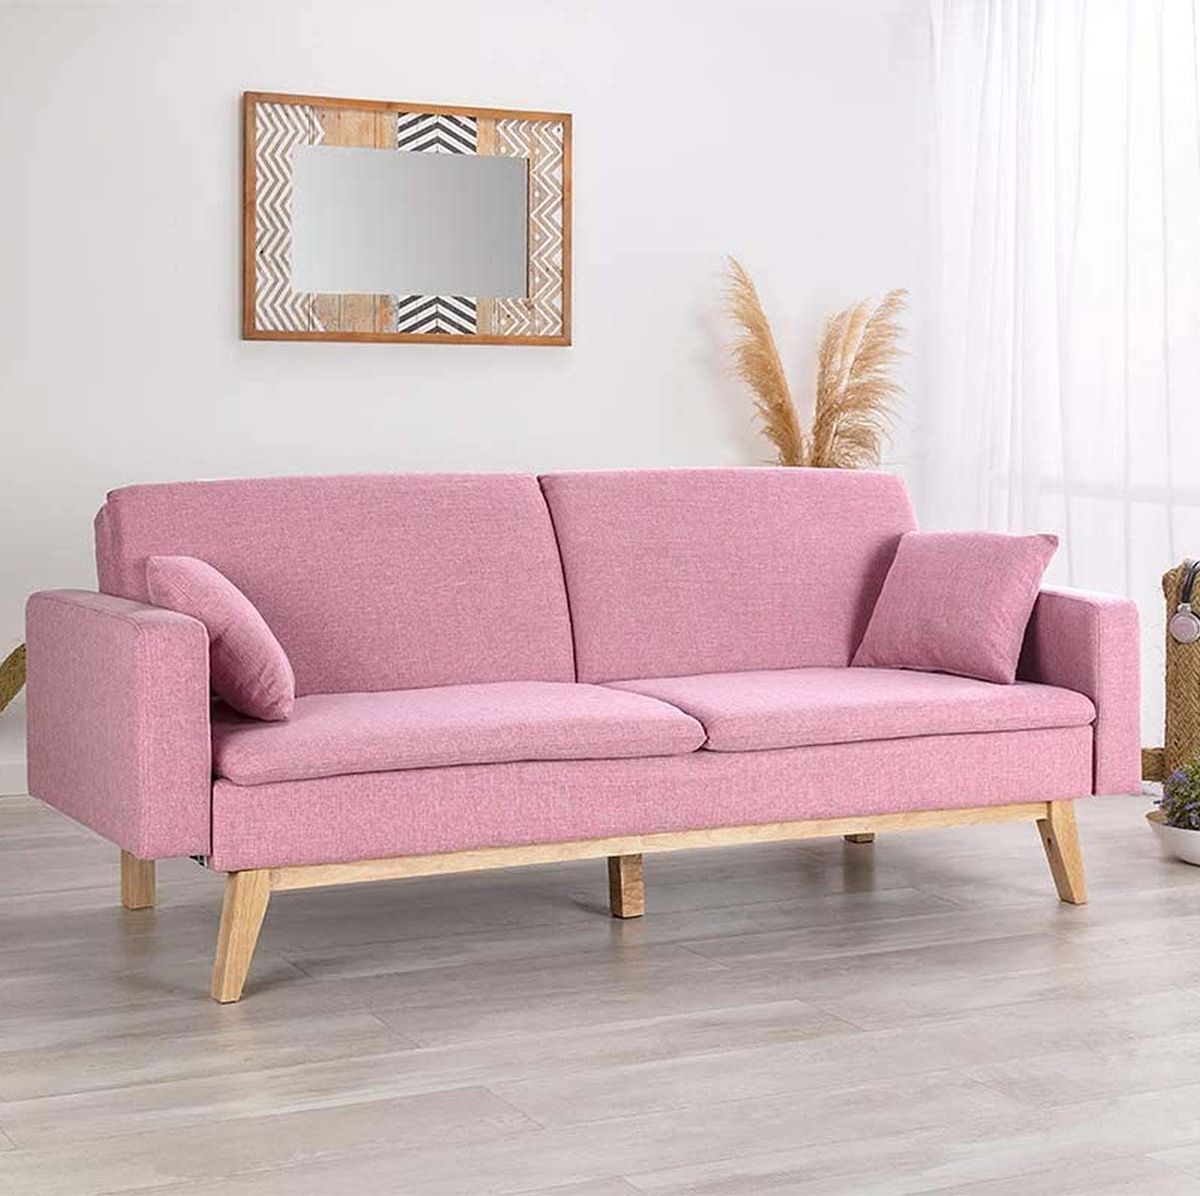 12 sofás cama para tu salón prácticos y bonitos